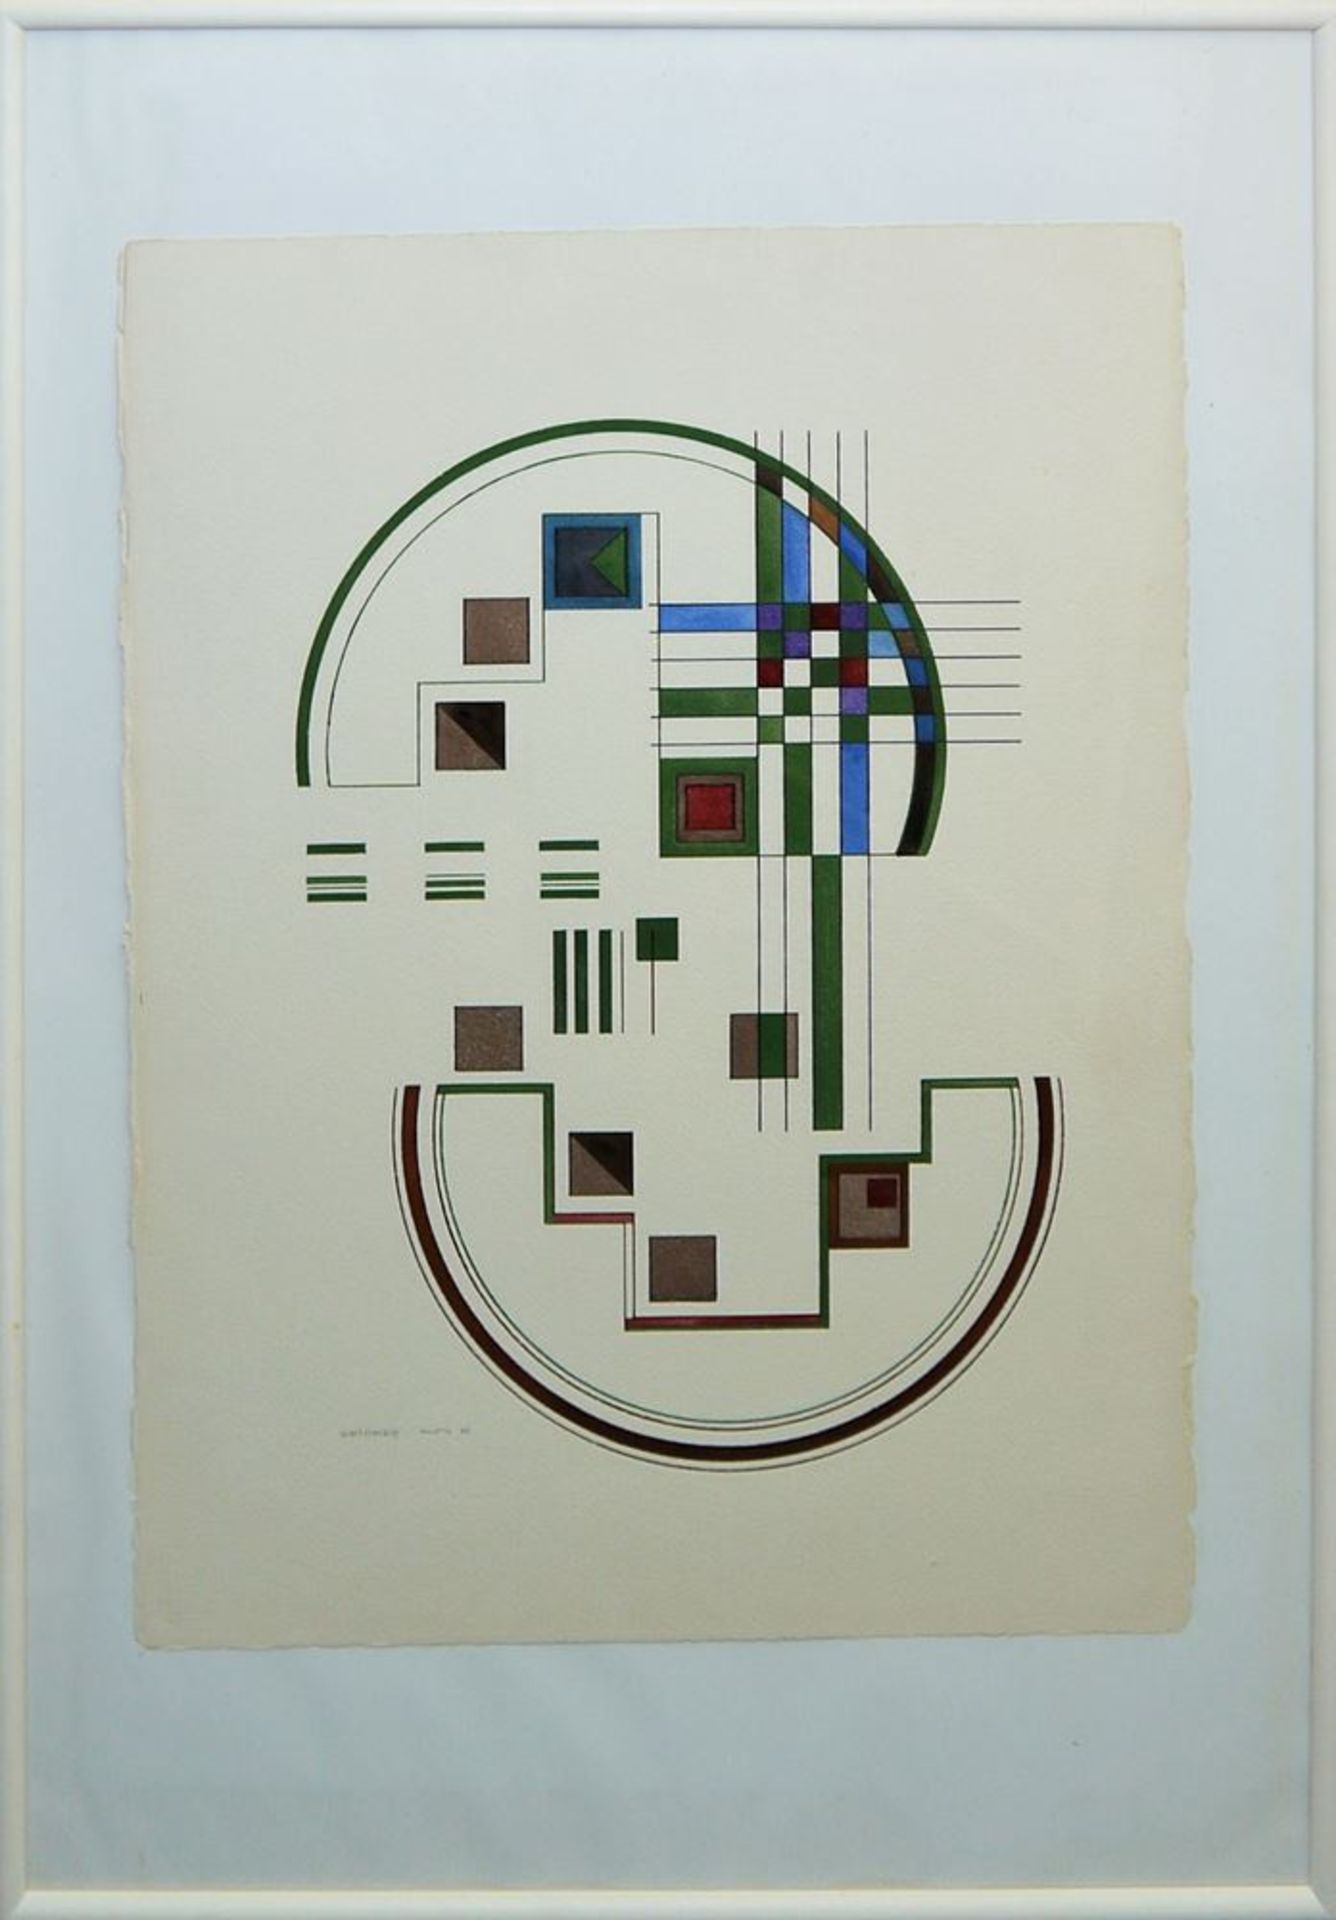 Heinrich Neuy, (Bauhaus- Schüler), "Intelligenz erhält den Frieden", konstruktivistische